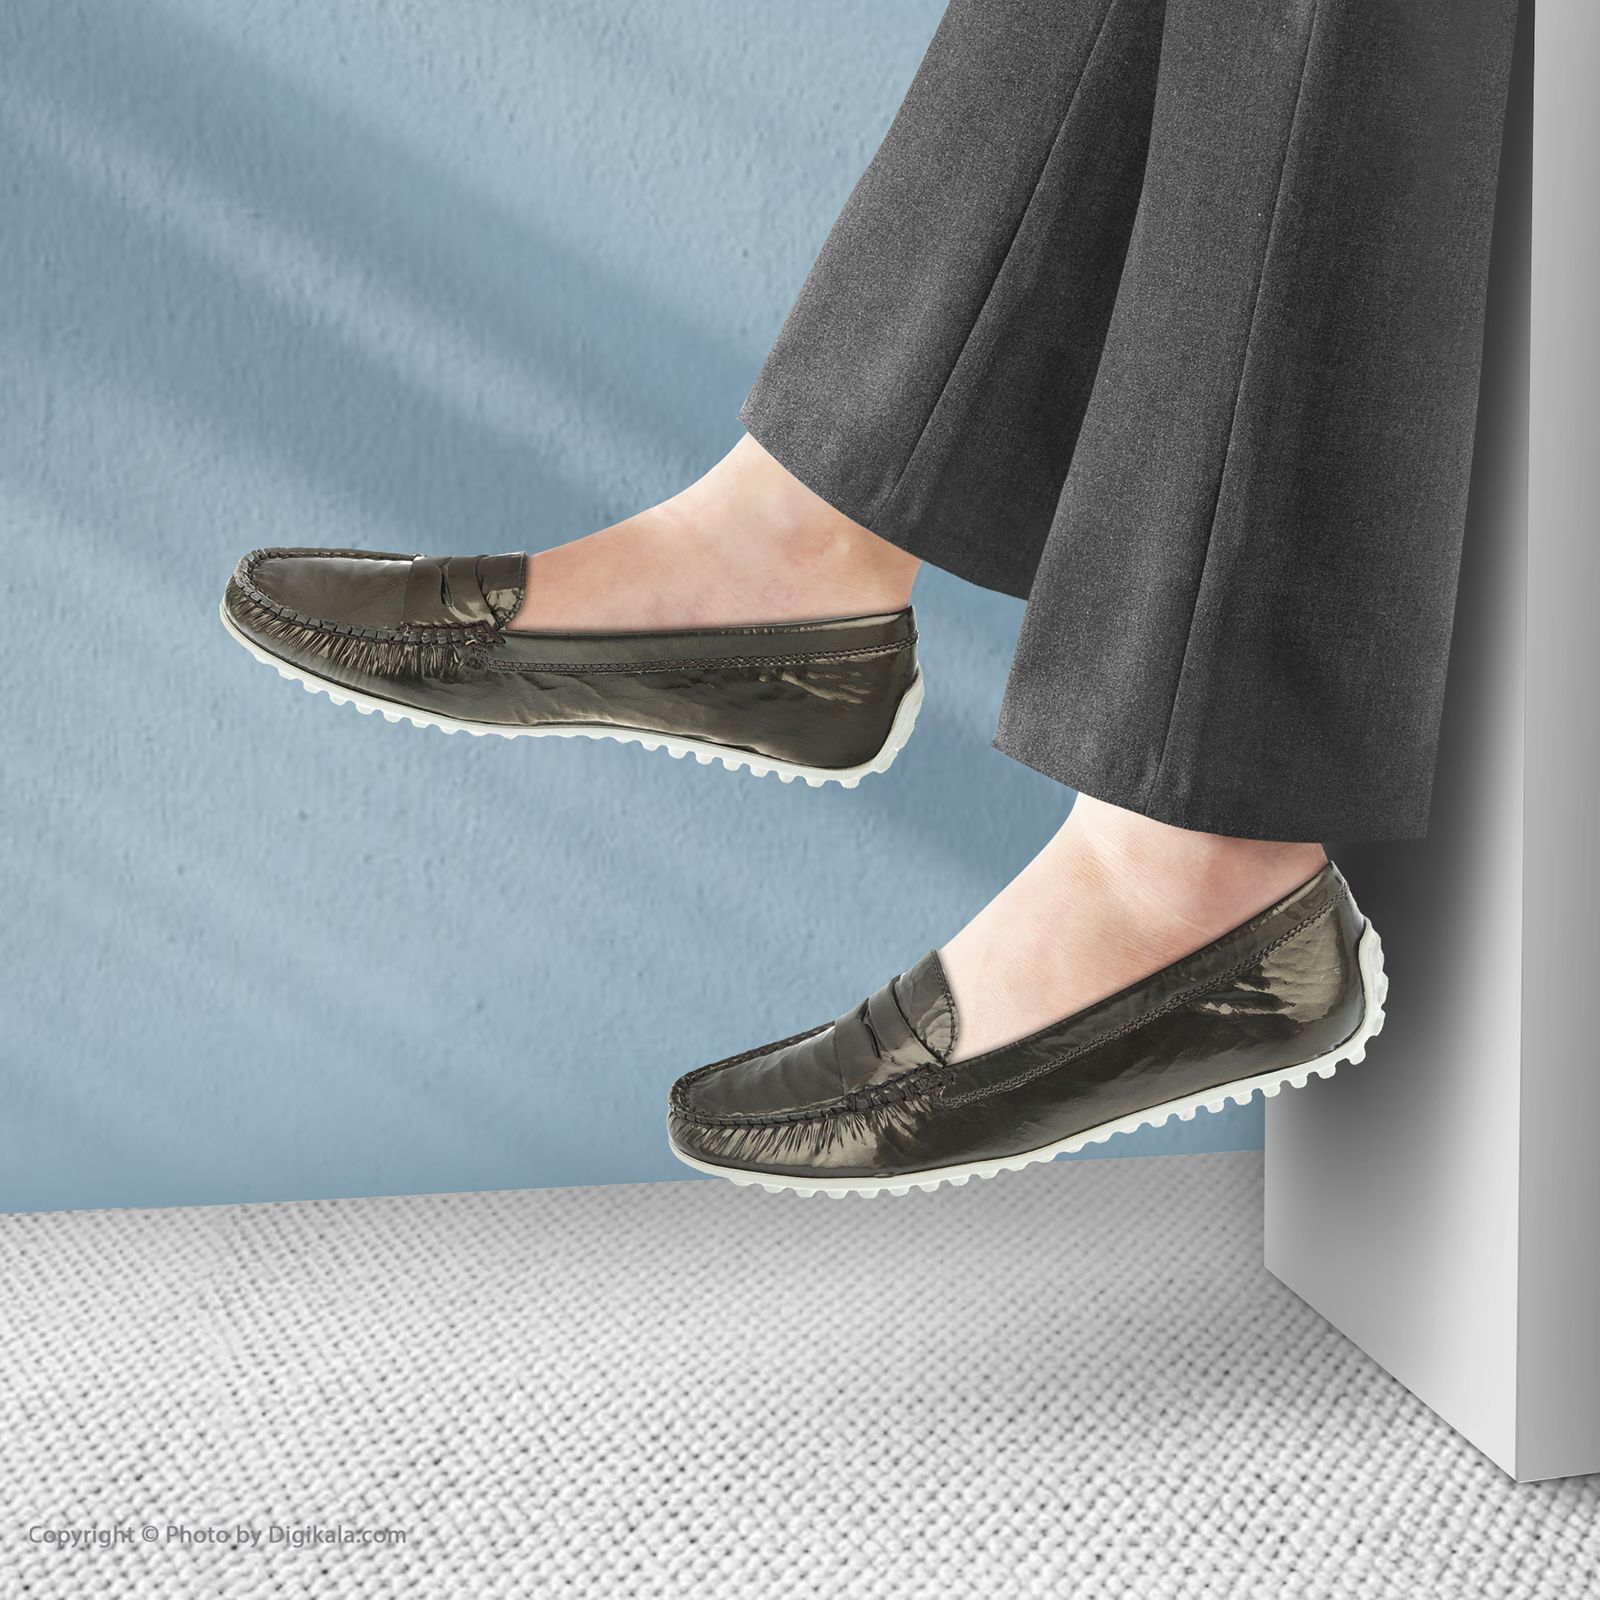 کفش زنانه هوگل مدل 3-100515-7000 - رزگلد - 7